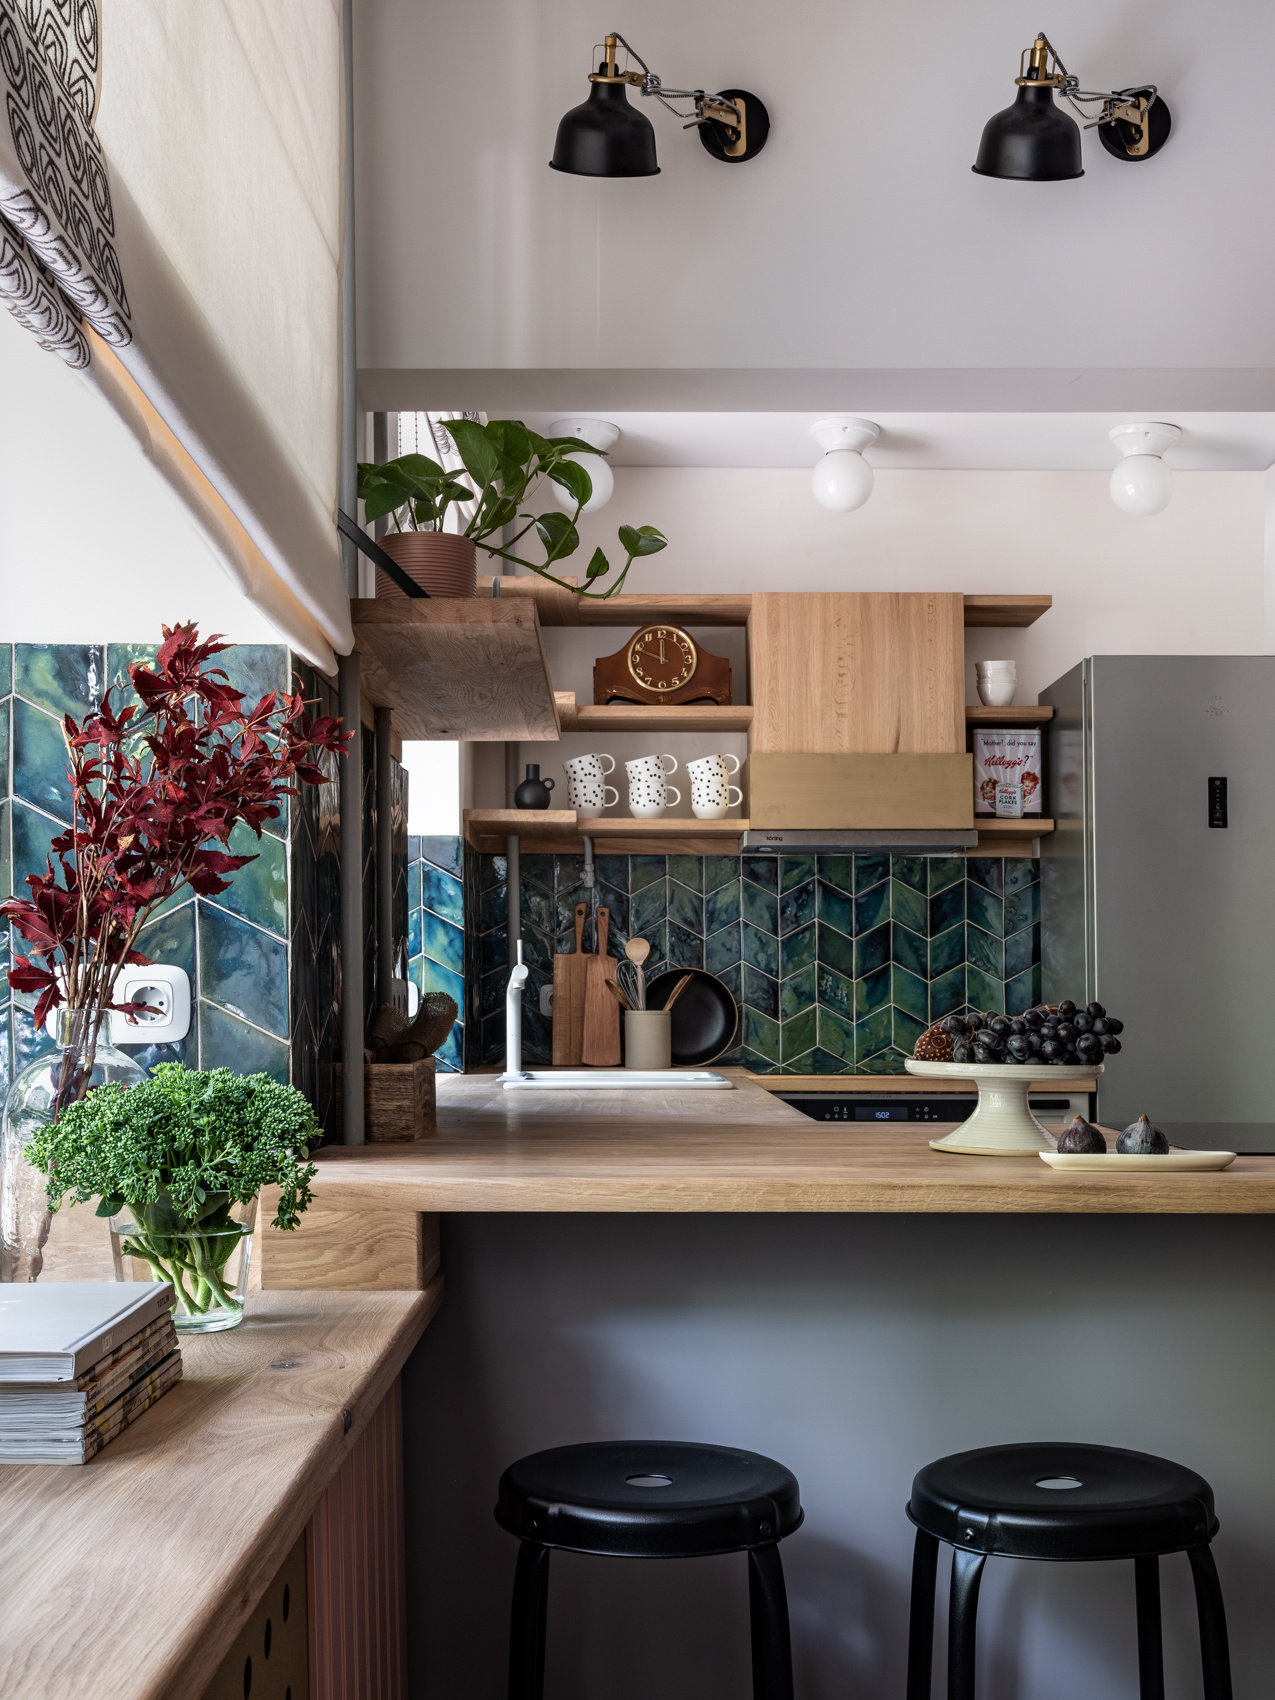 Dự án của nhà thiết kế nội thất Malika Boranbaeva, biến khu vực backsplash nhỏ trở thành từng đợt sóng biển màu xanh đẹp mắt. Bên trên là hệ thống kệ lưu trữ giúp tối ưu hóa bức tường trong phòng bếp nhỏ.